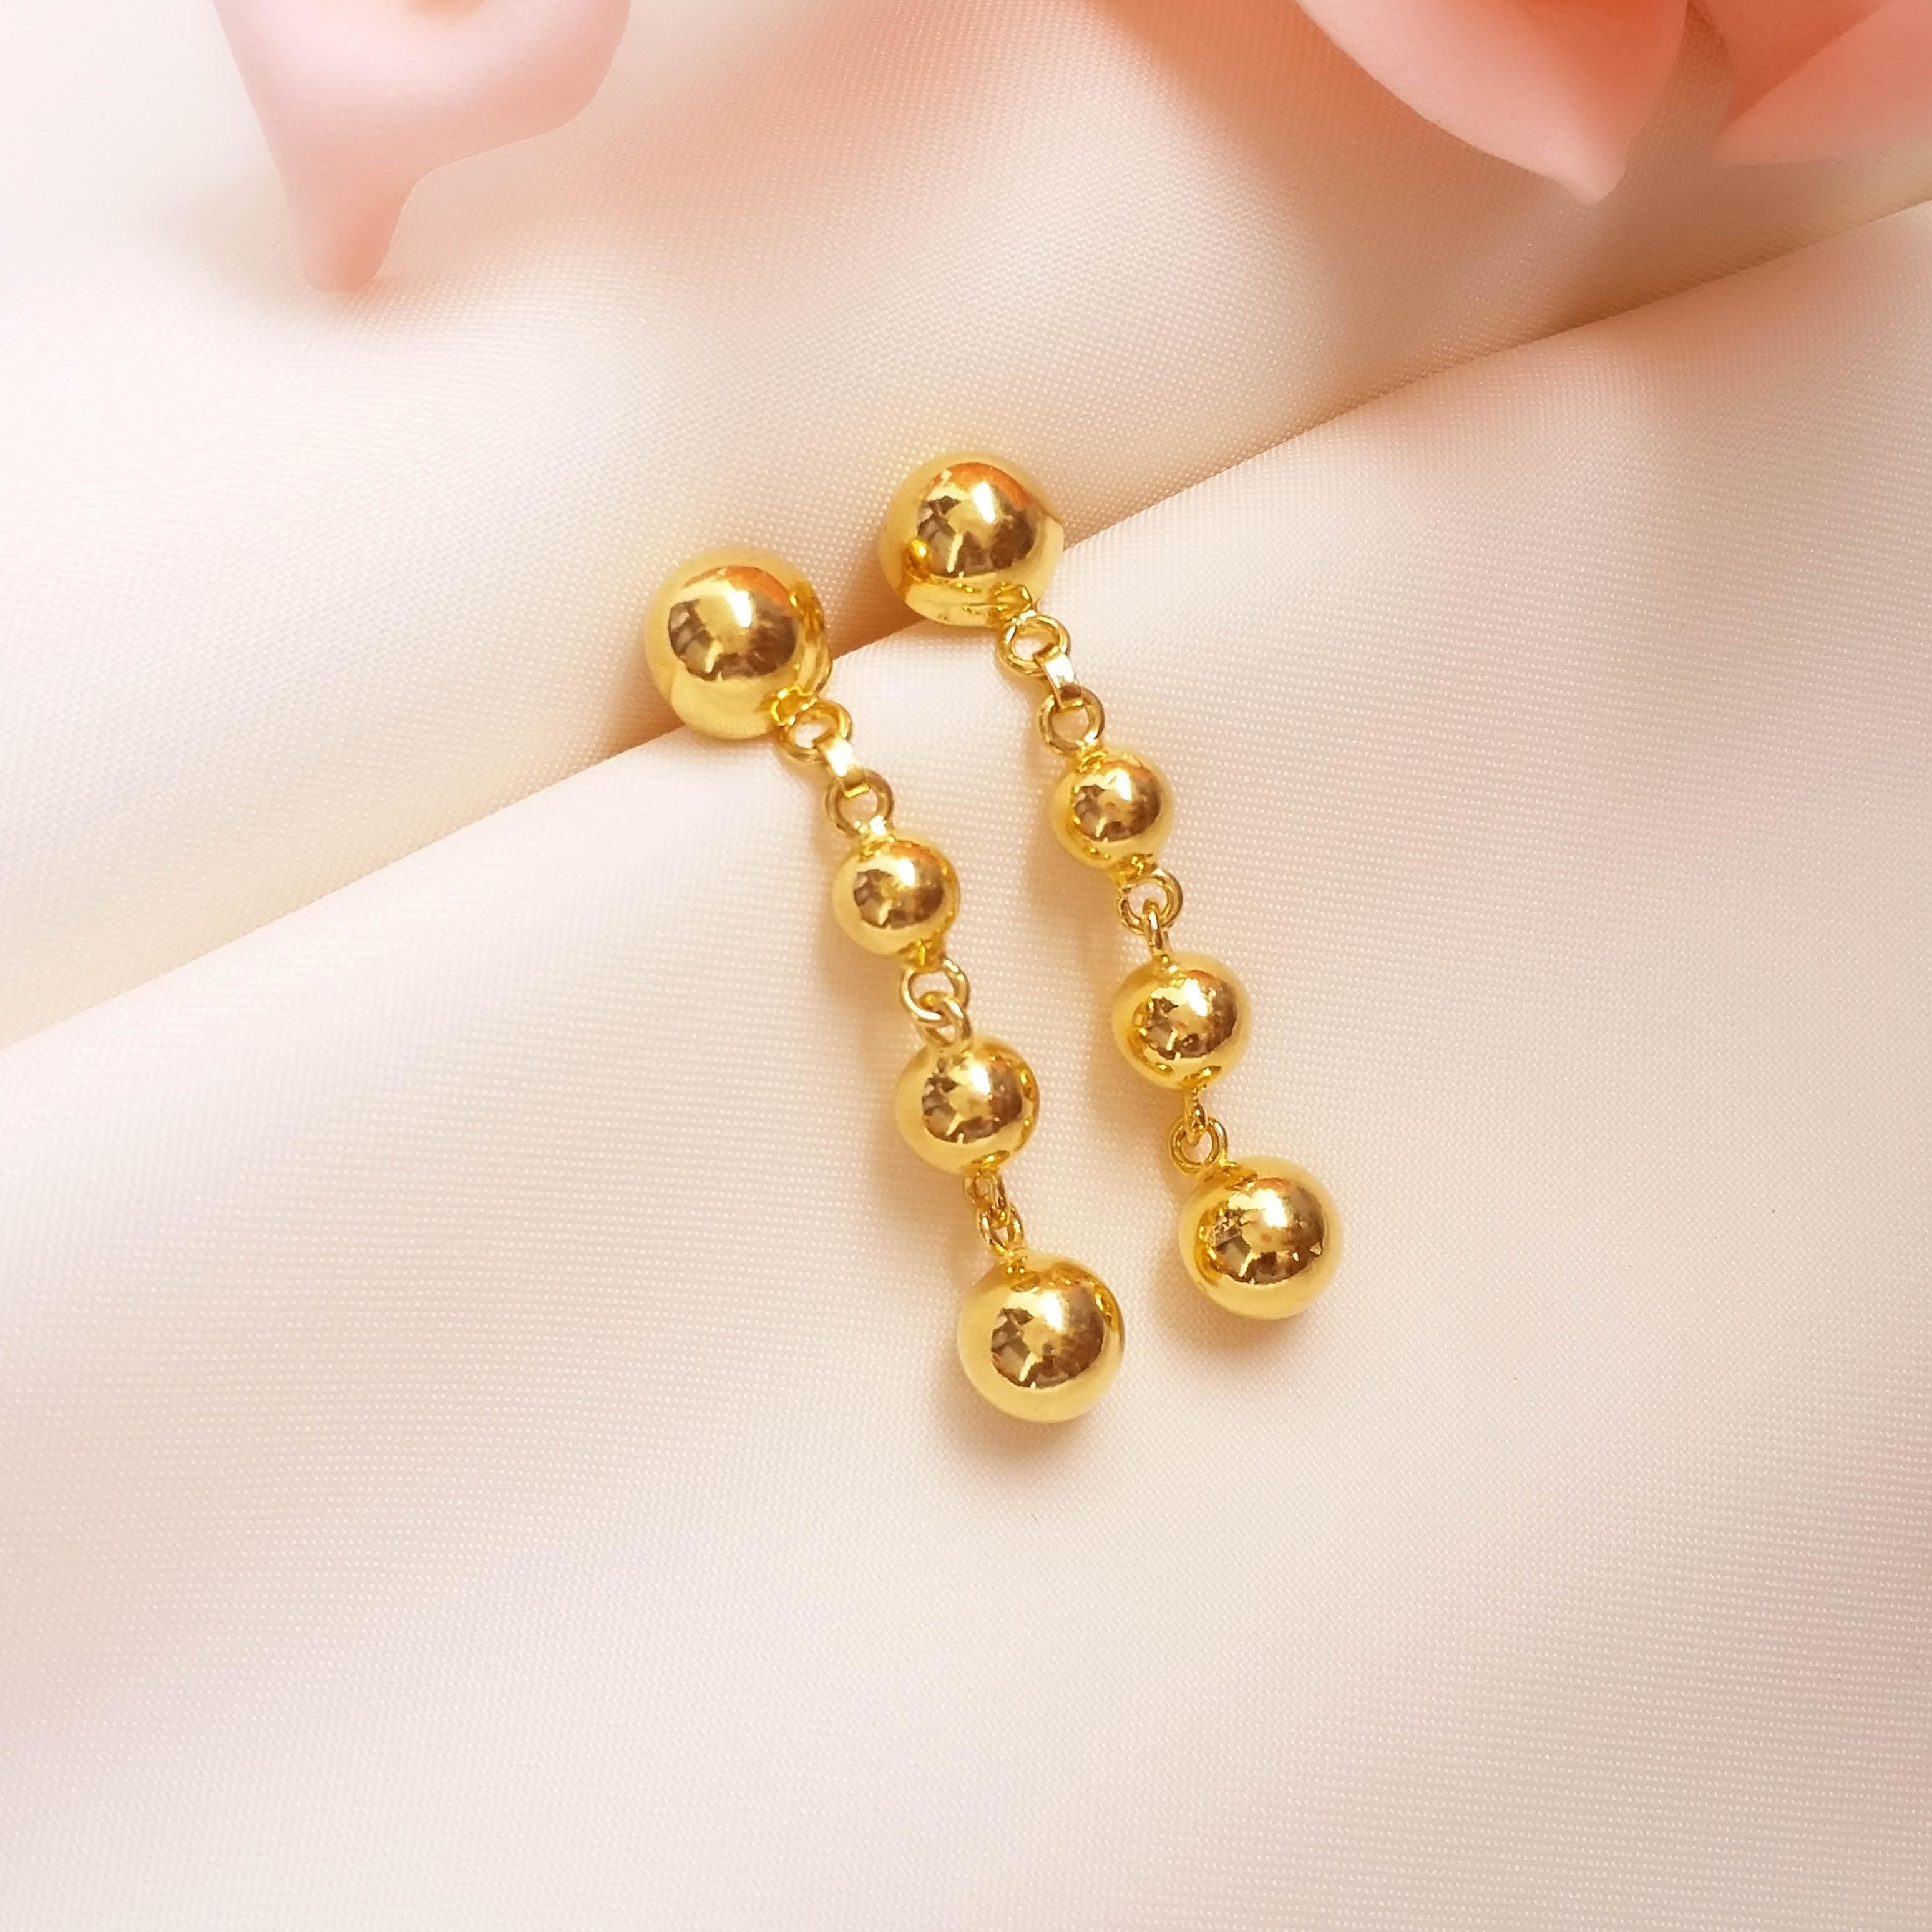 Buy 22k Lyrical Delight Gold Dangle Earrings Online from Vaibhav Jewellers